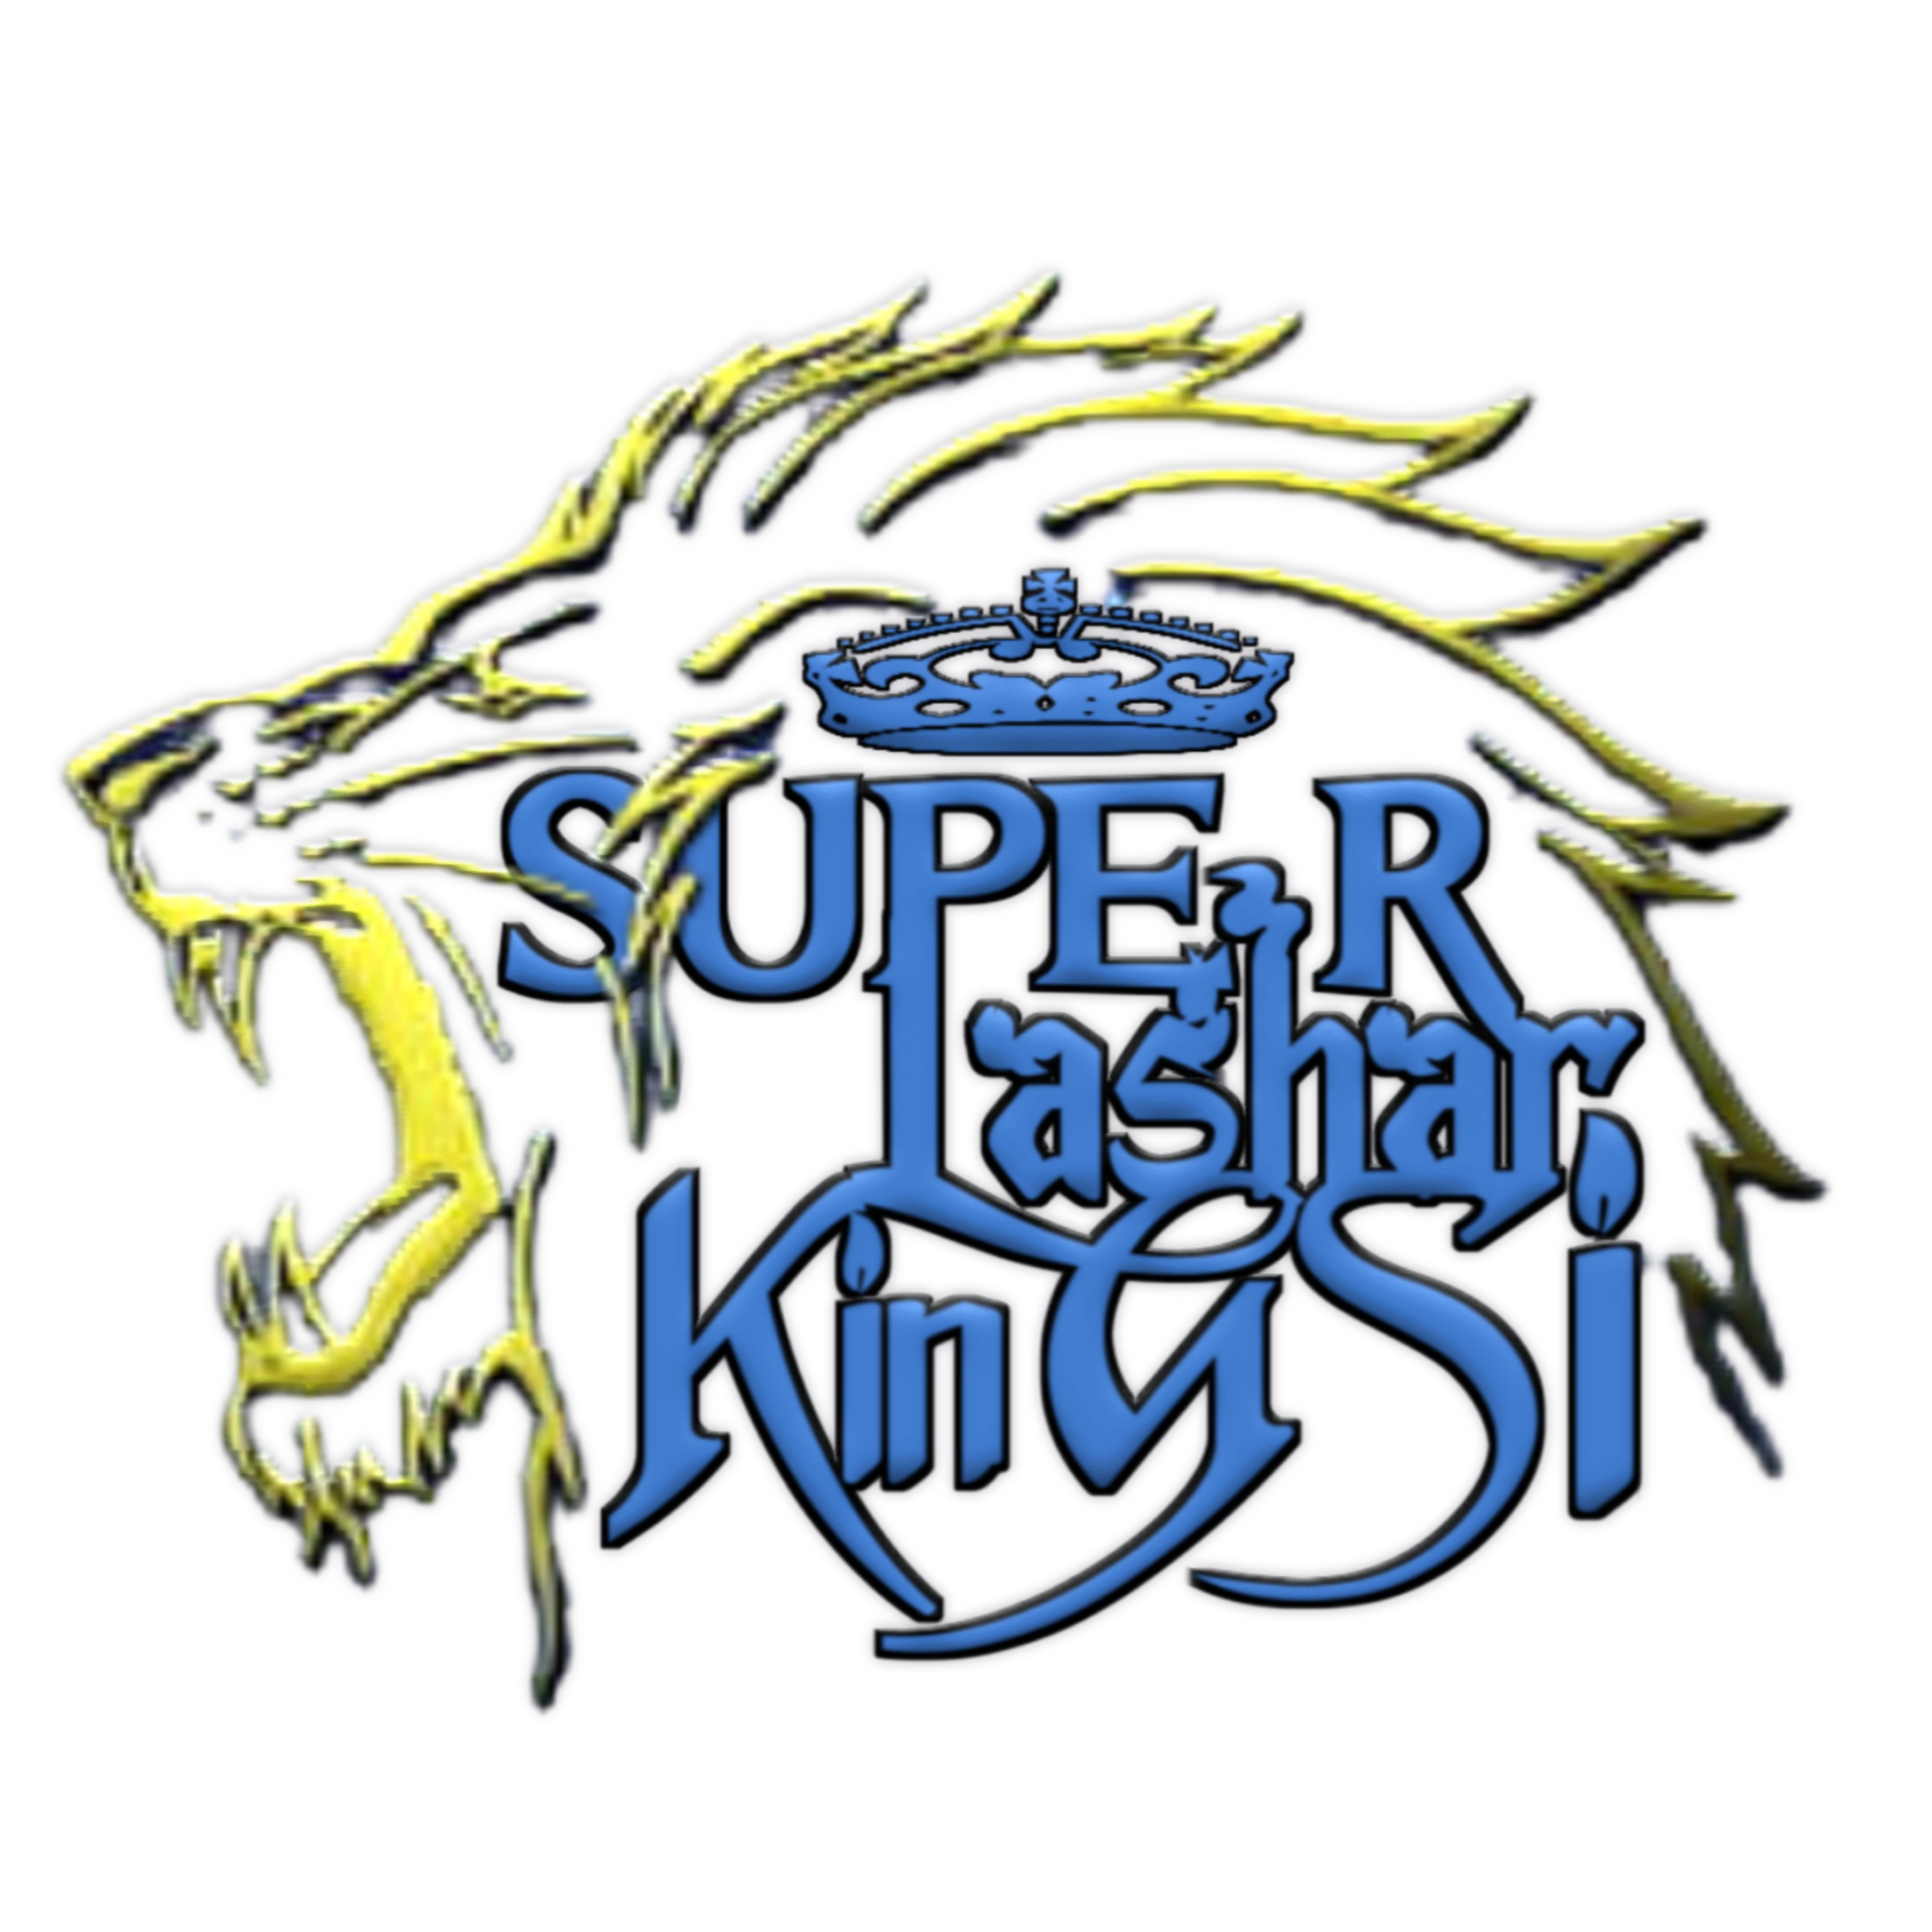 Super Lashar Kings